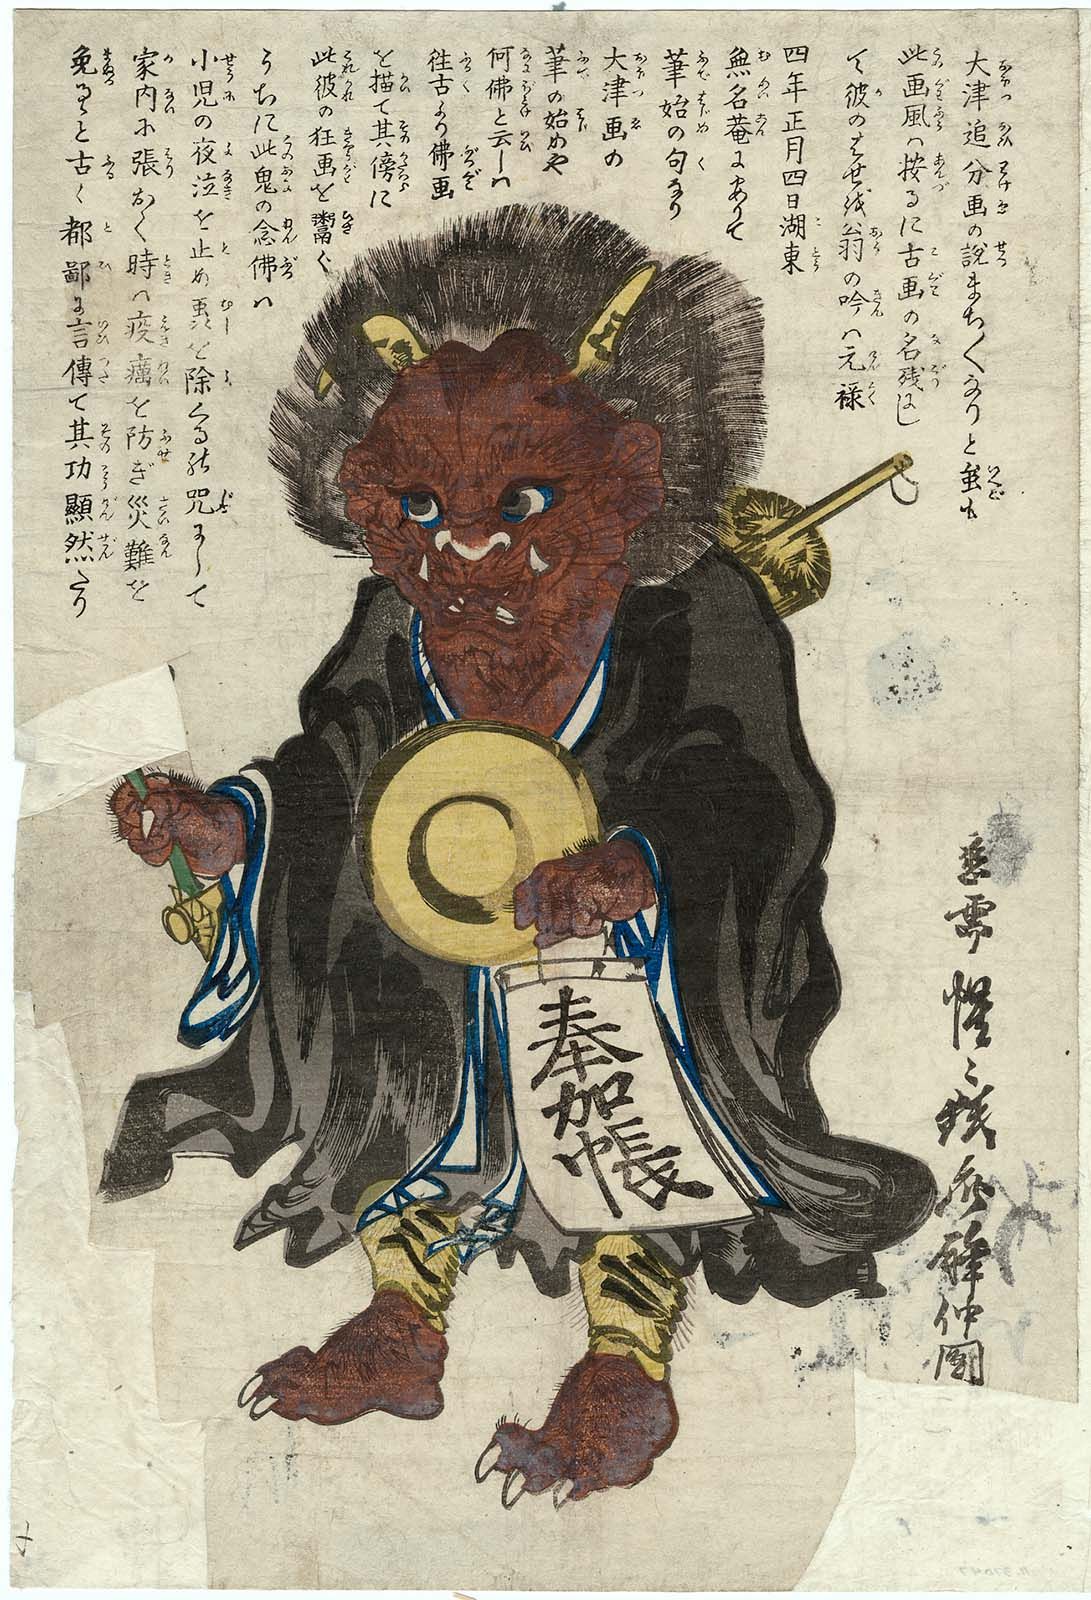 شيطان تحول إلى البوذية by Kawanabe Kyōsai - ١٨٦٠ - ٣٥٫٨ x ٢٤٫٣ سم 